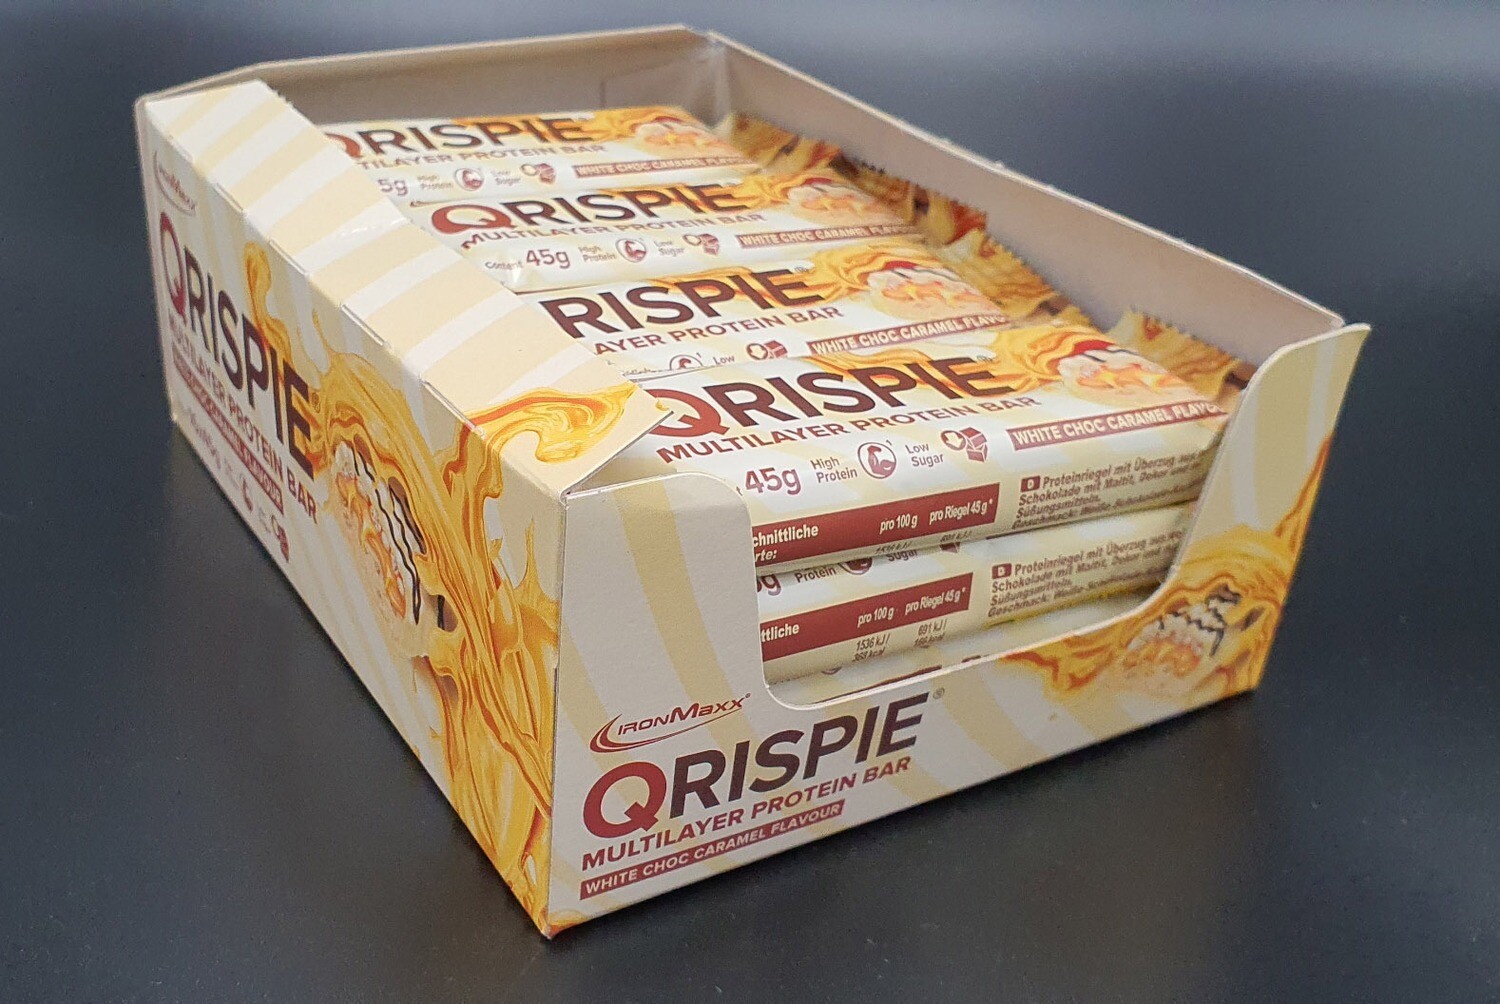 QRISPIE Multilayer Protein Bar White Choc Caramel Flavour Proteinriegel 16 x 45g